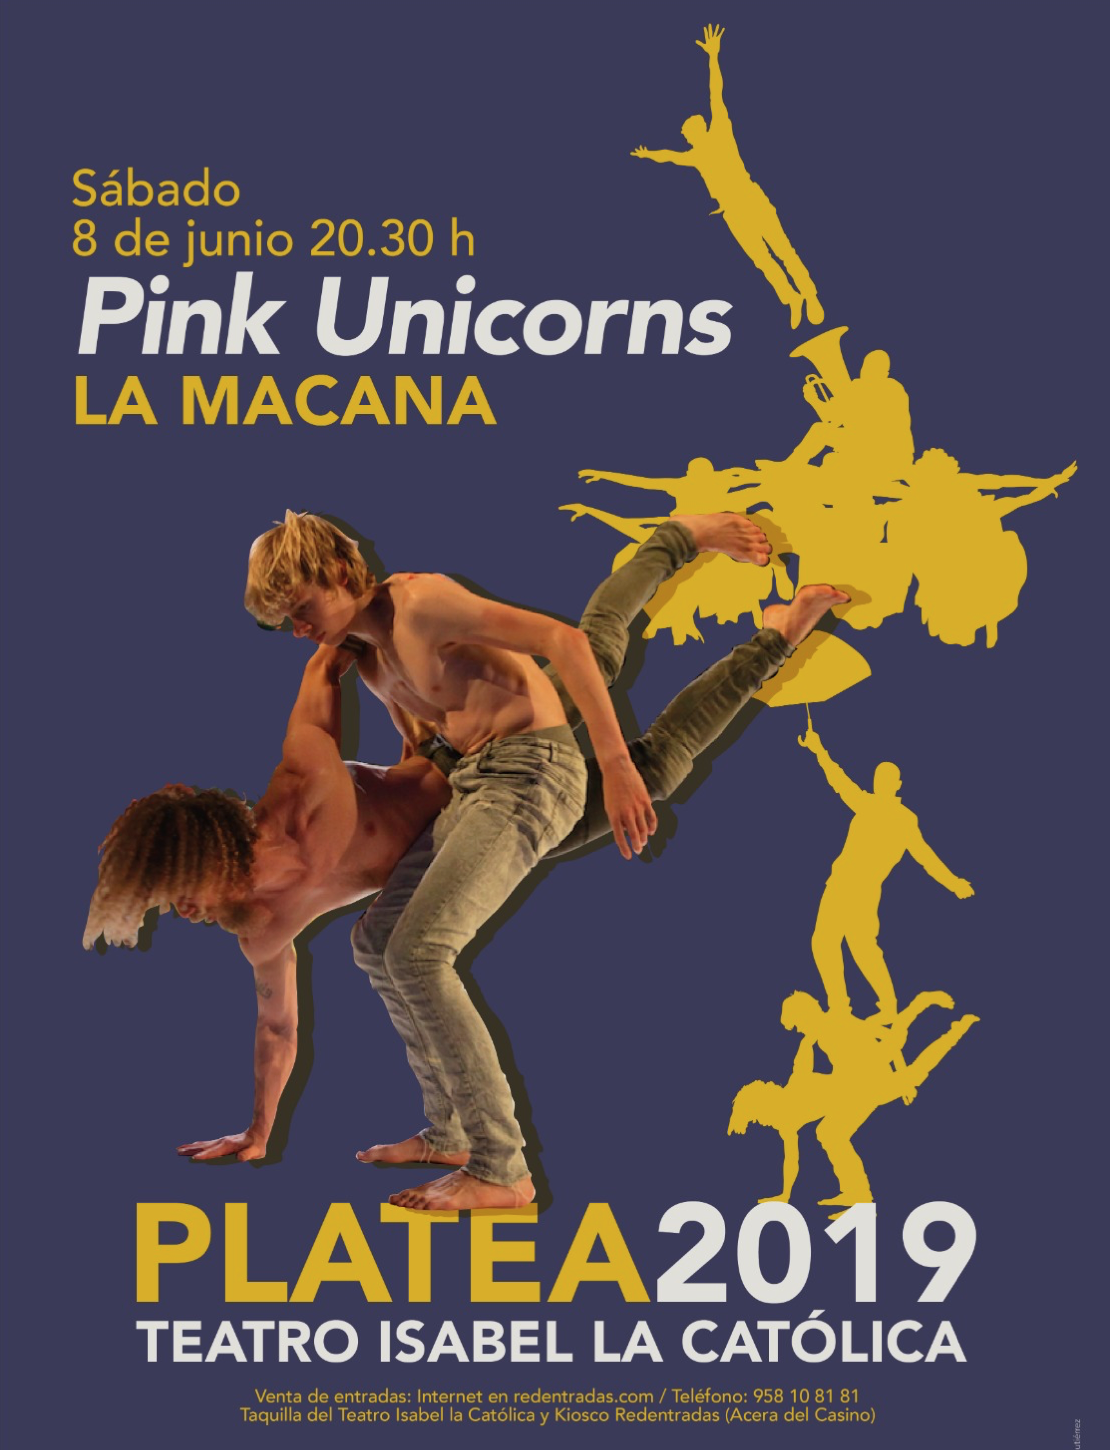 Pink Unicorns ciclo Platea 2019 en el Isabel la Católica